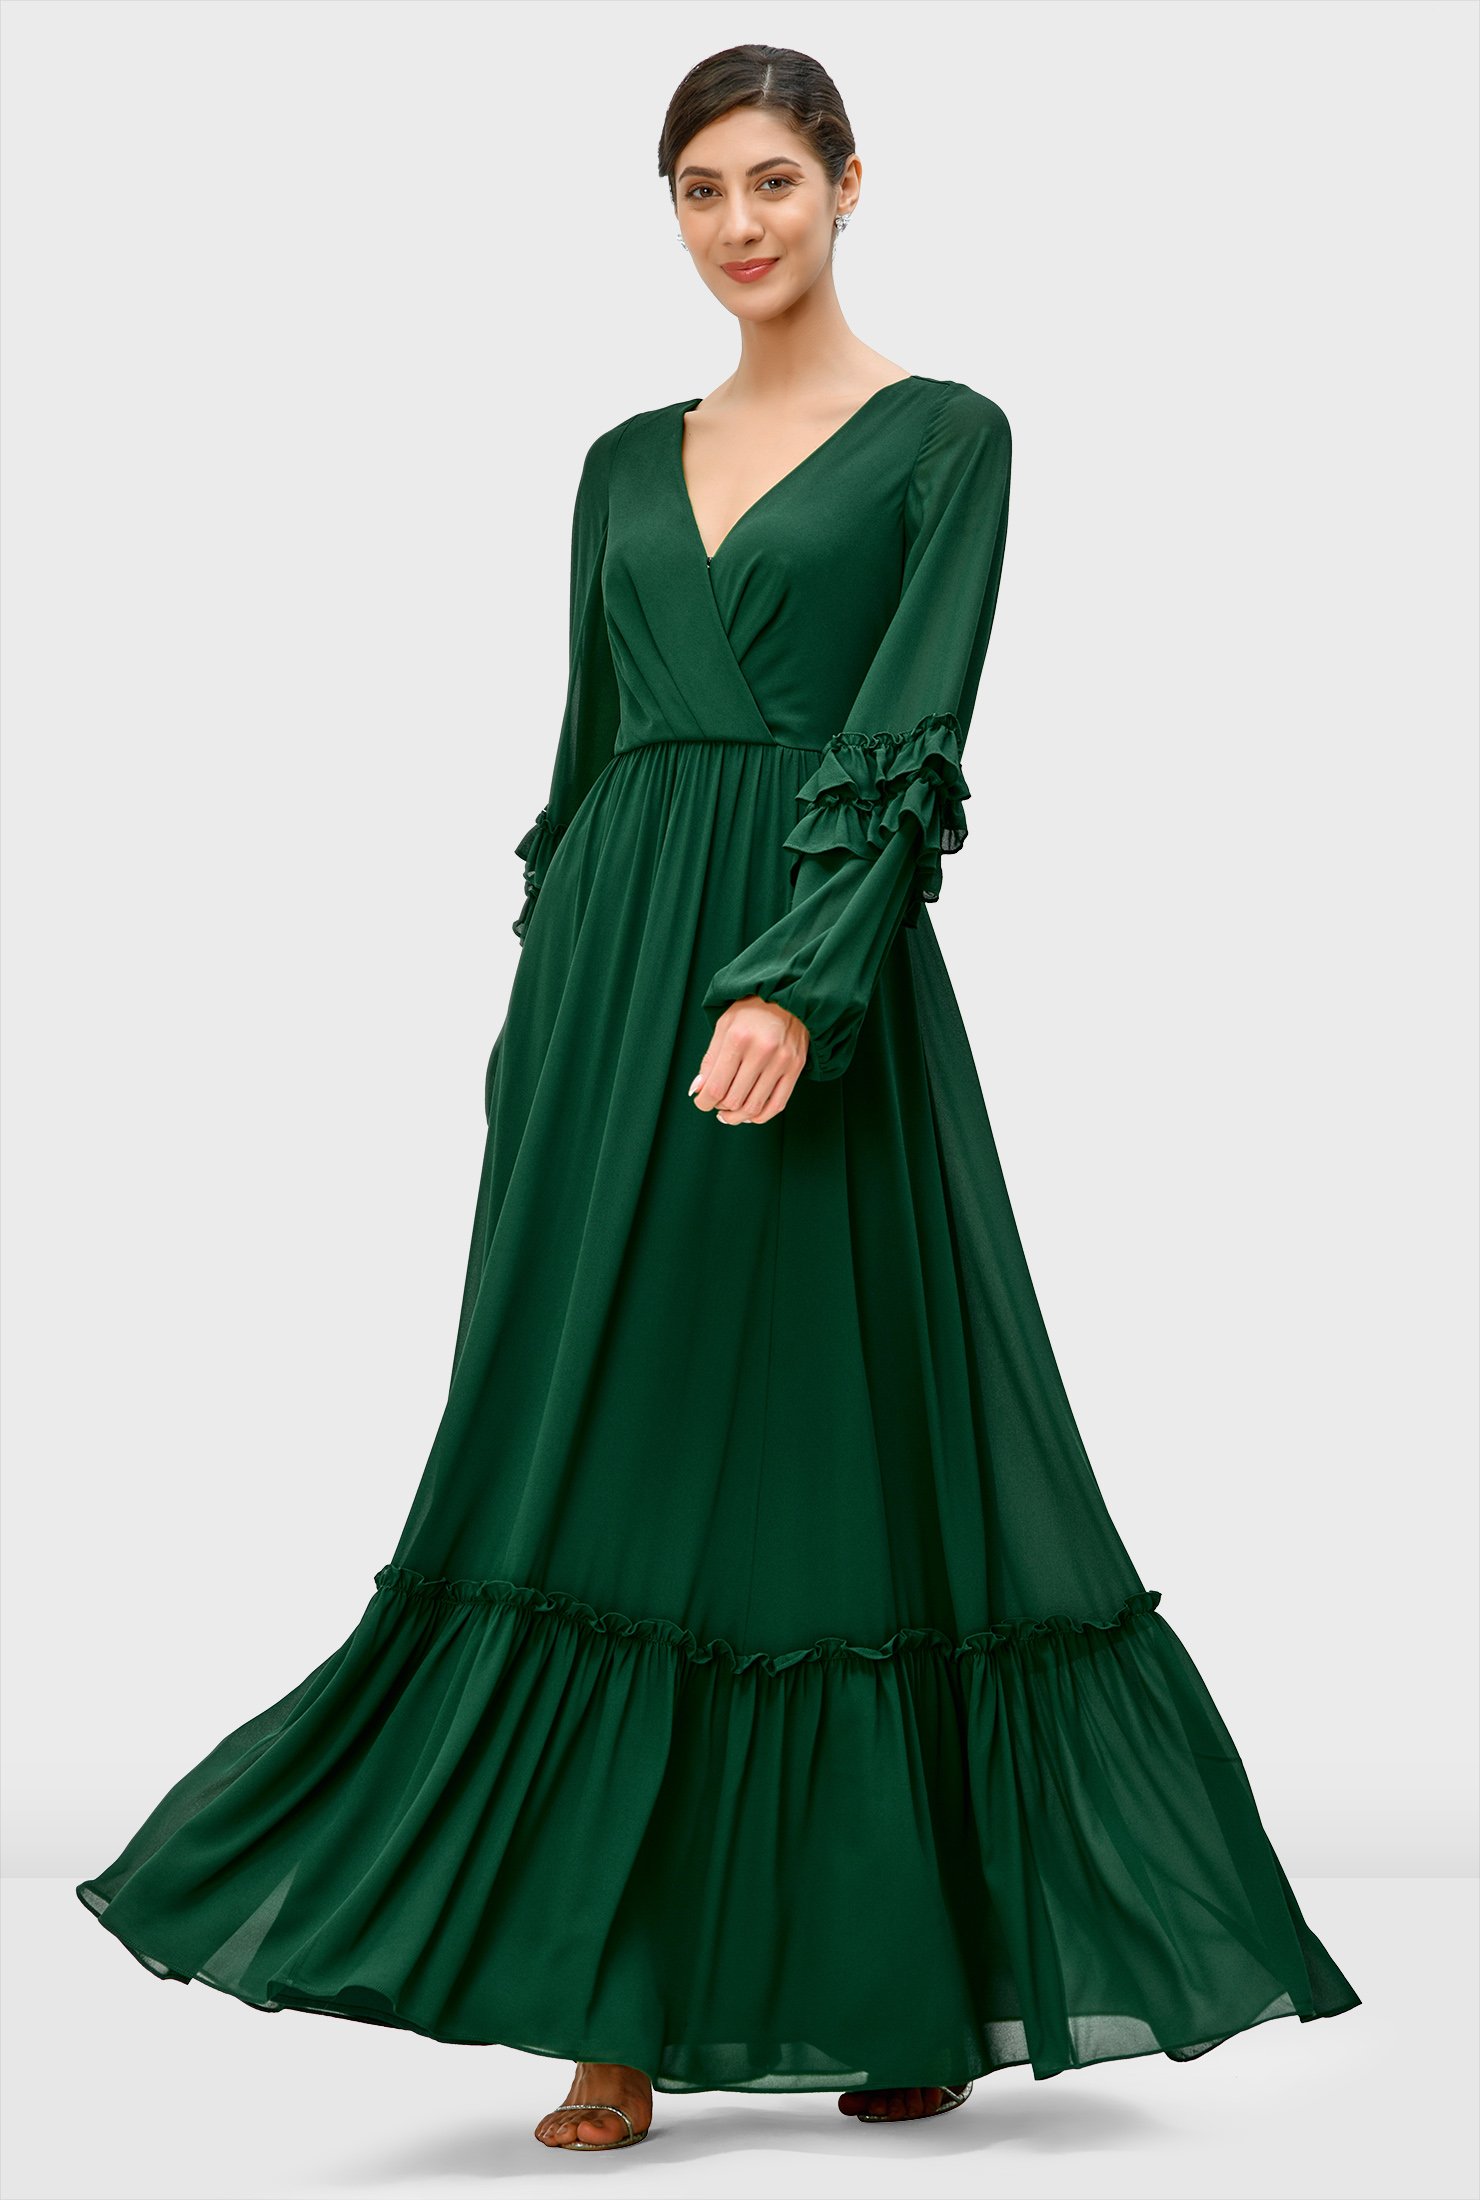 Cotton Evening Dress Gift for Her Maxi Dress Waist Belted Flounce Dress Green Summer Dress Ankle Lenght Long Dress Holiday Dress